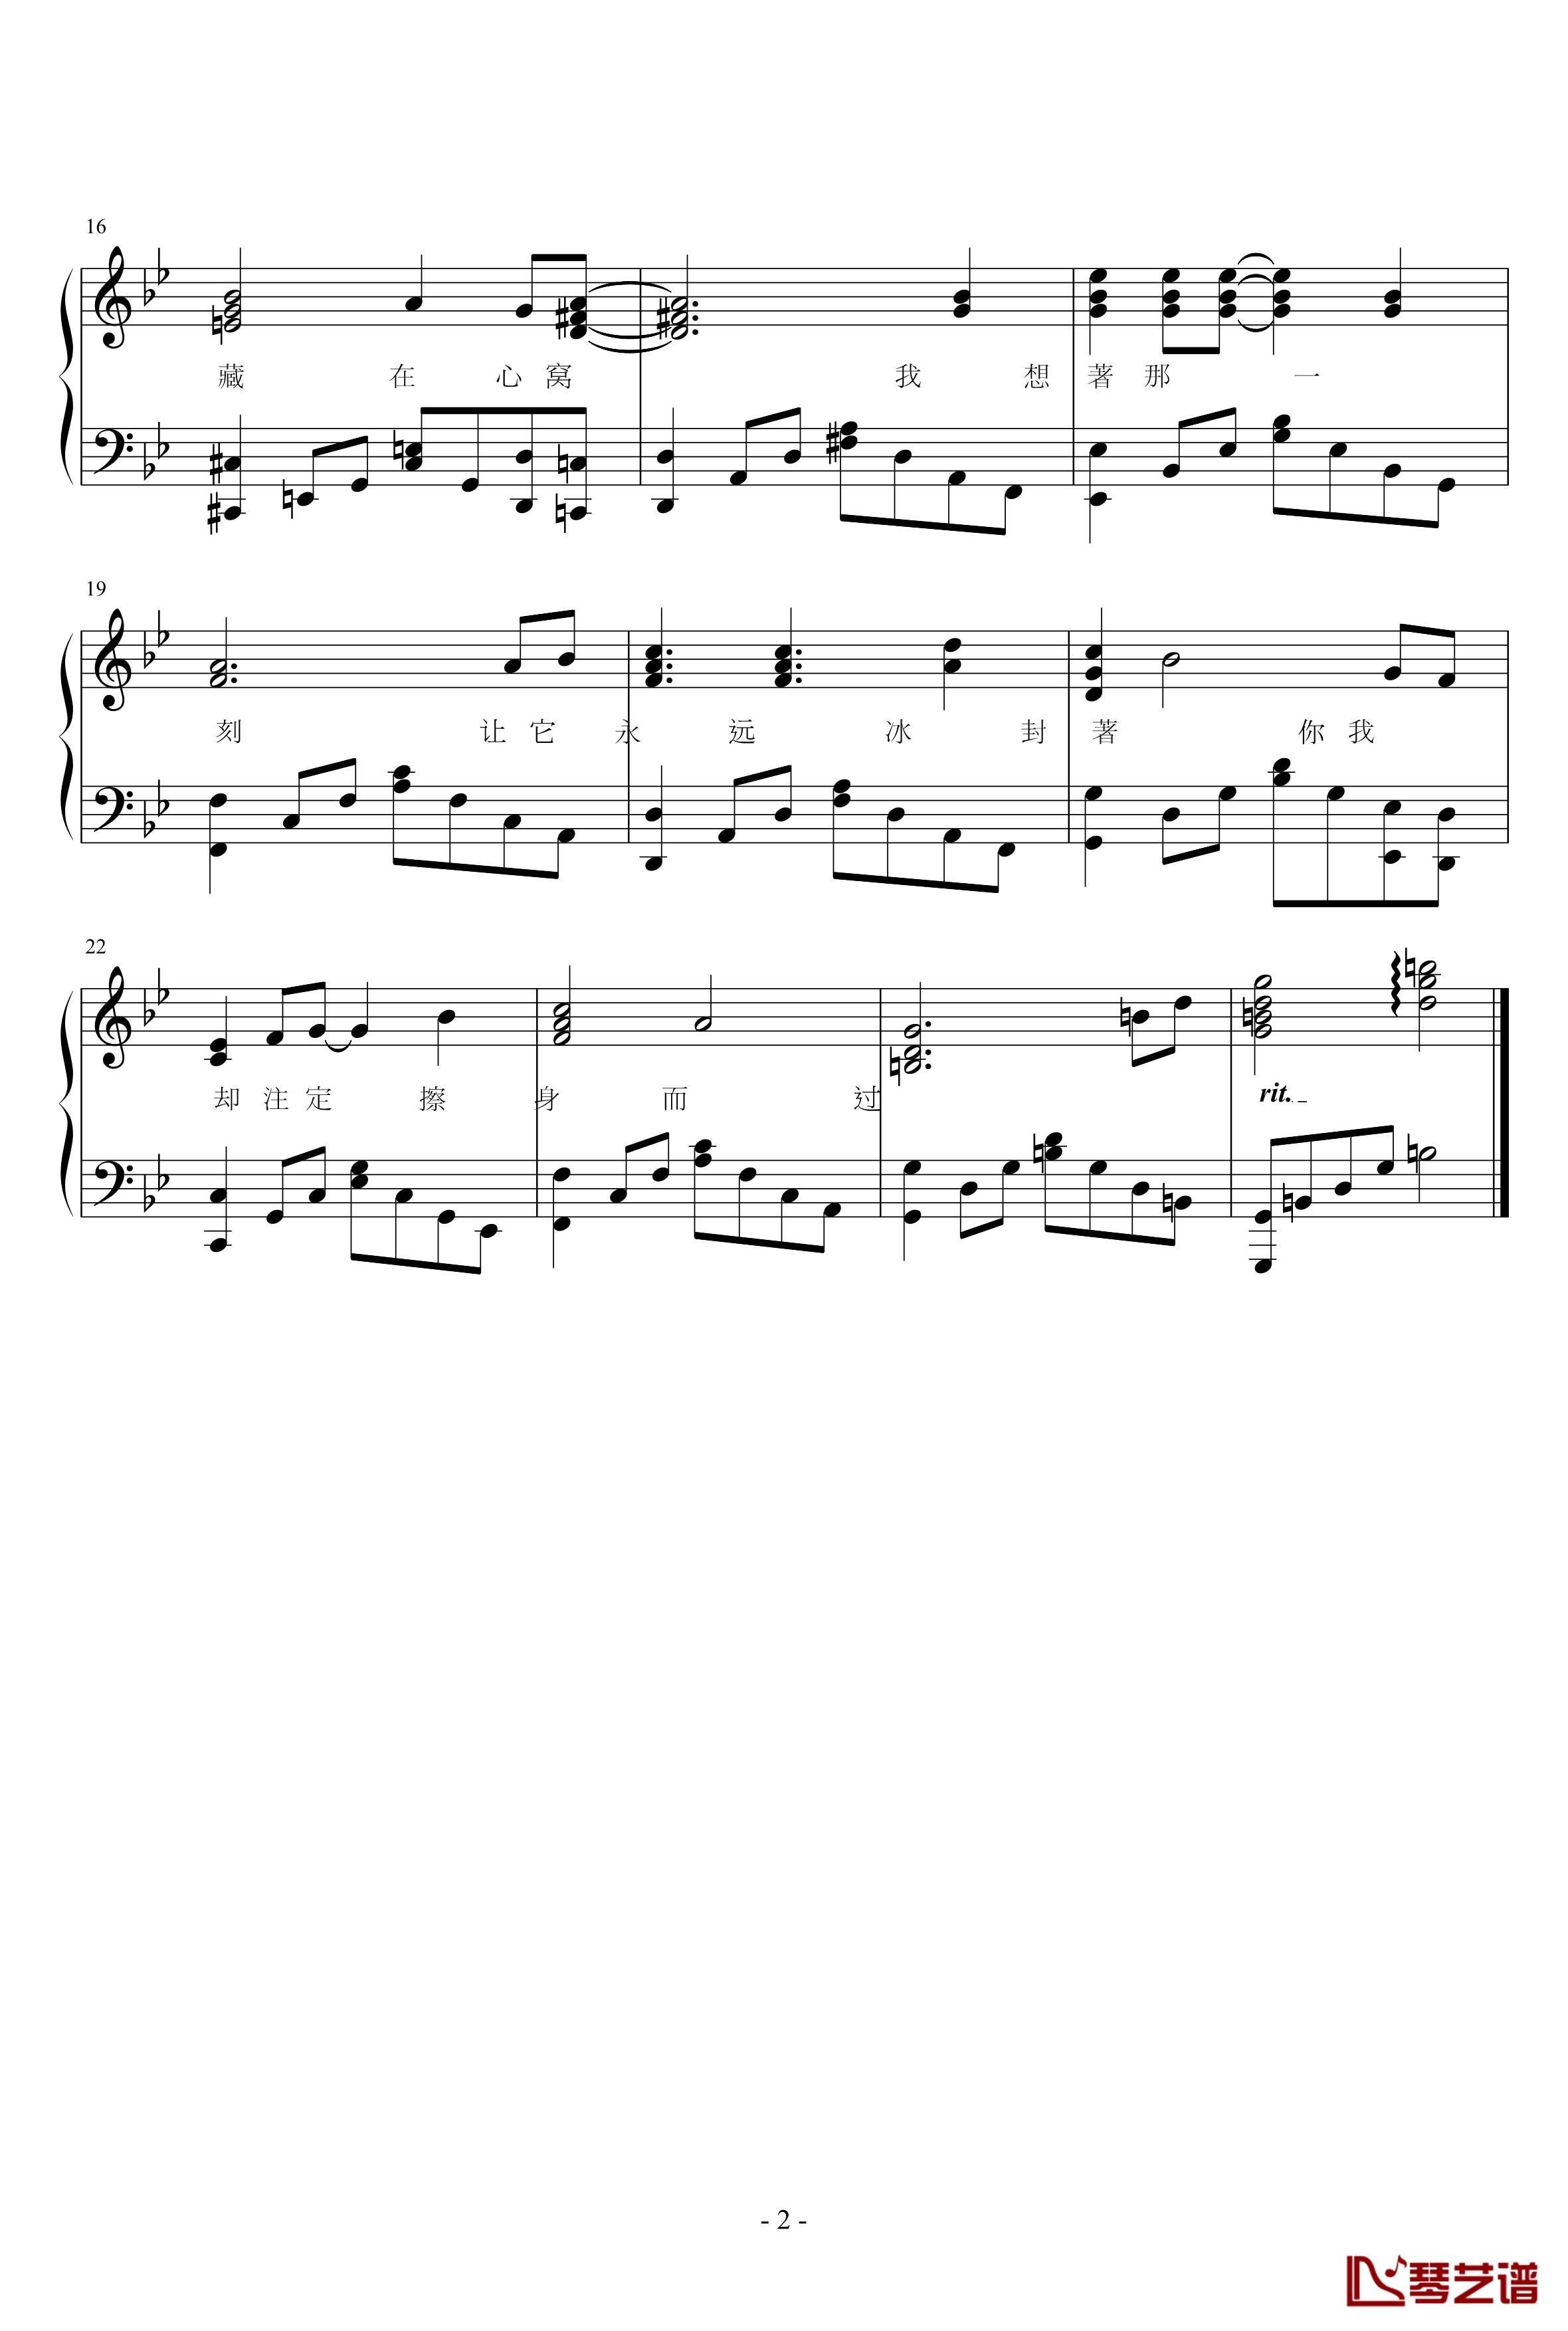 手的自白钢琴谱-chk9182